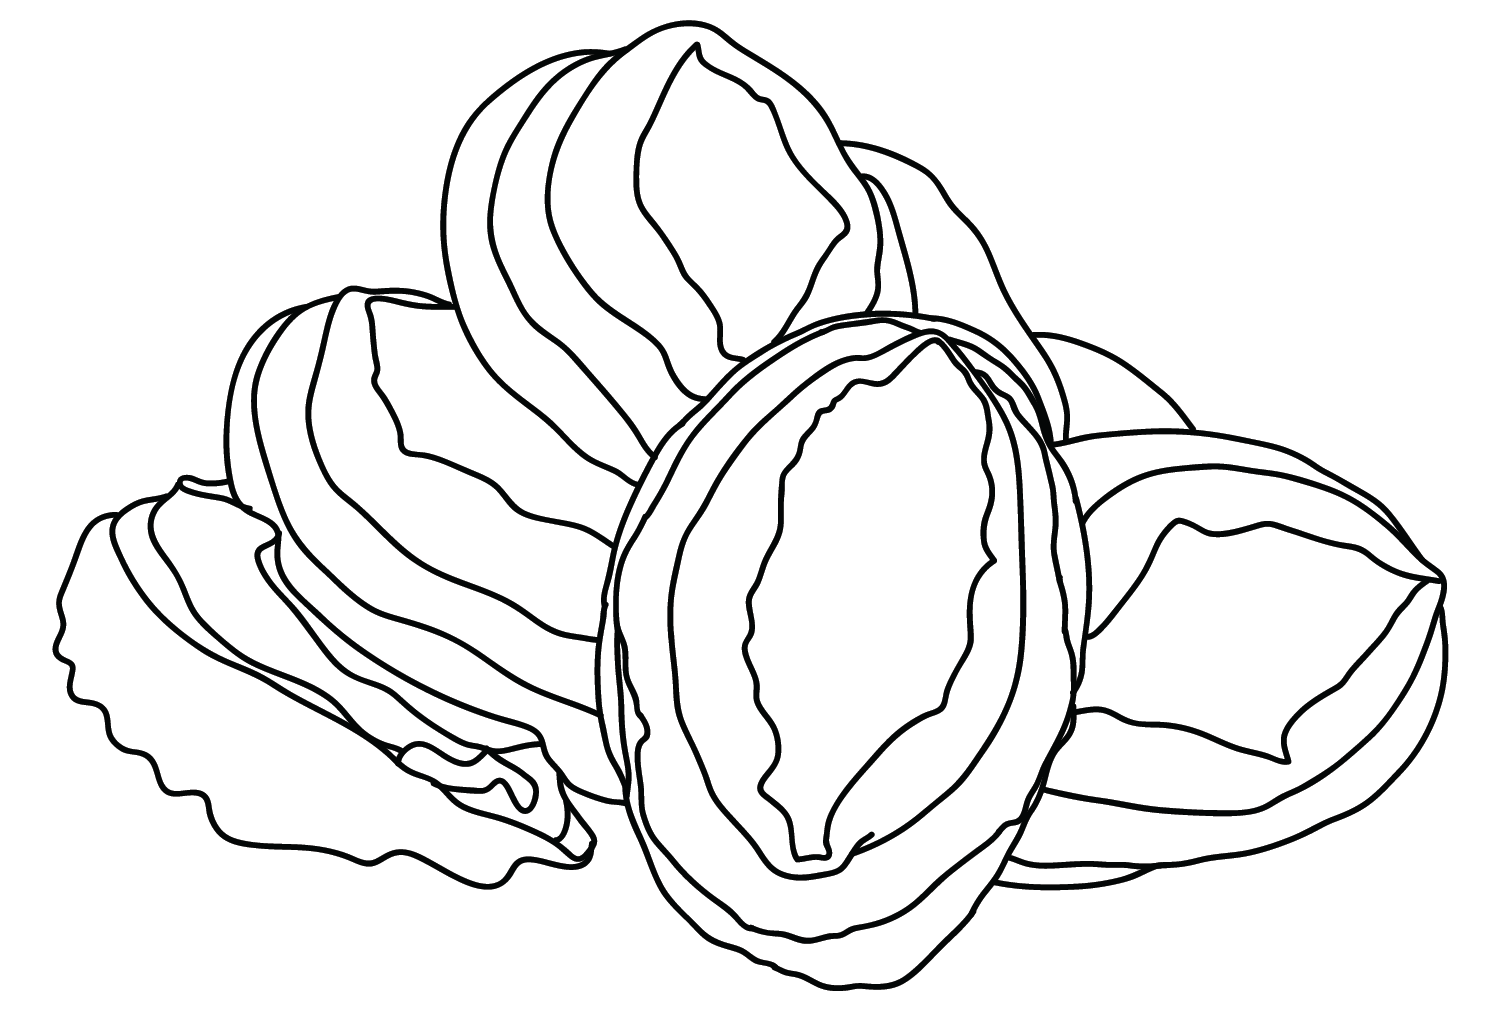 Изображения морского ушка для раскрашивания из морского ушка